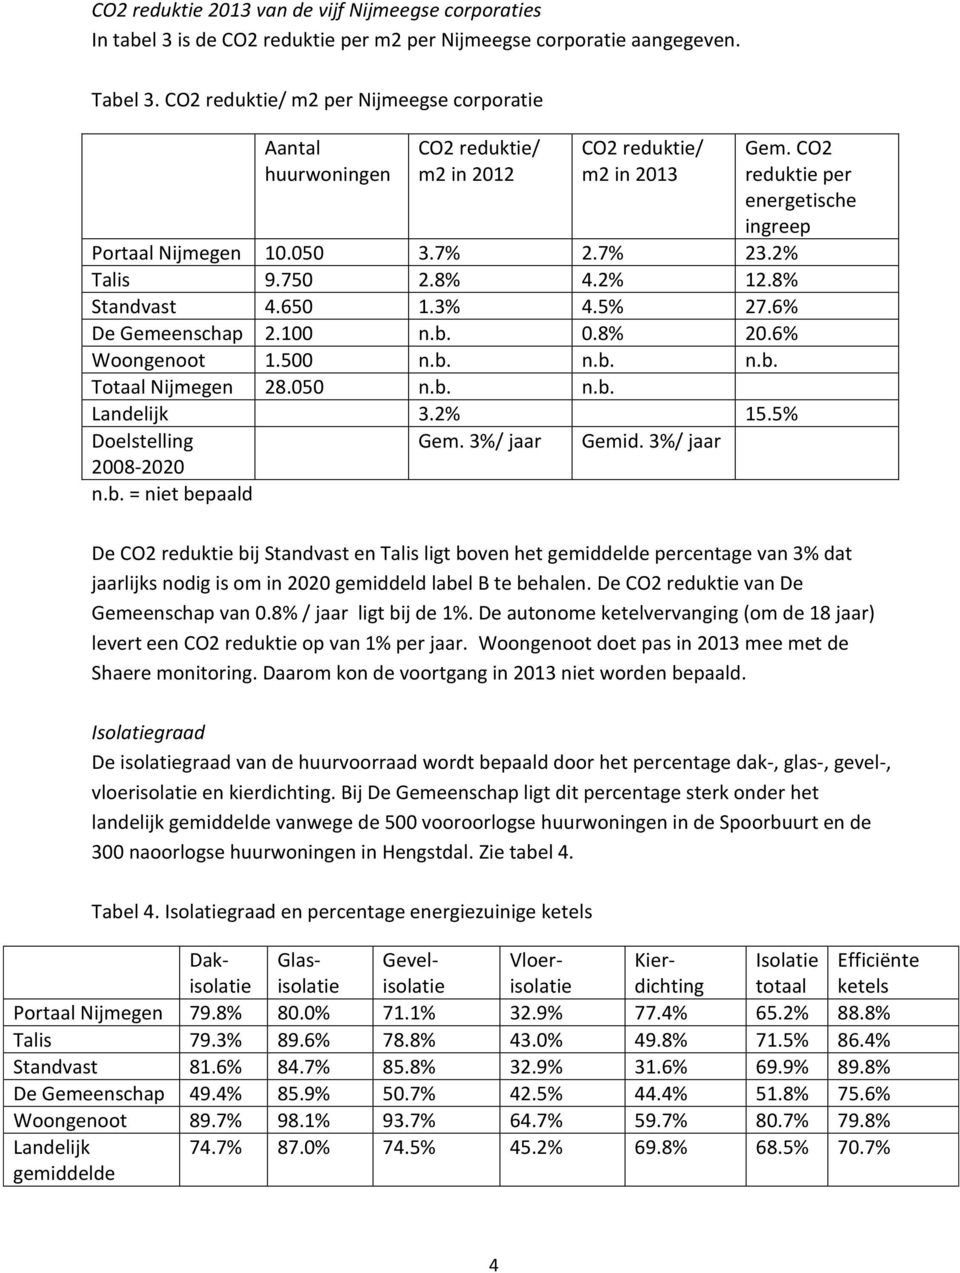 2% Talis 9.750 2.8% 4.2% 12.8% Standvast 4.650 1.3% 4.5% 27.6% De Gemeenschap 2.100 n.b. 0.8% 20.6% Woongenoot 1.500 n.b. n.b. n.b. Totaal Nijmegen 28.050 n.b. n.b. Landelijk 3.2% 15.